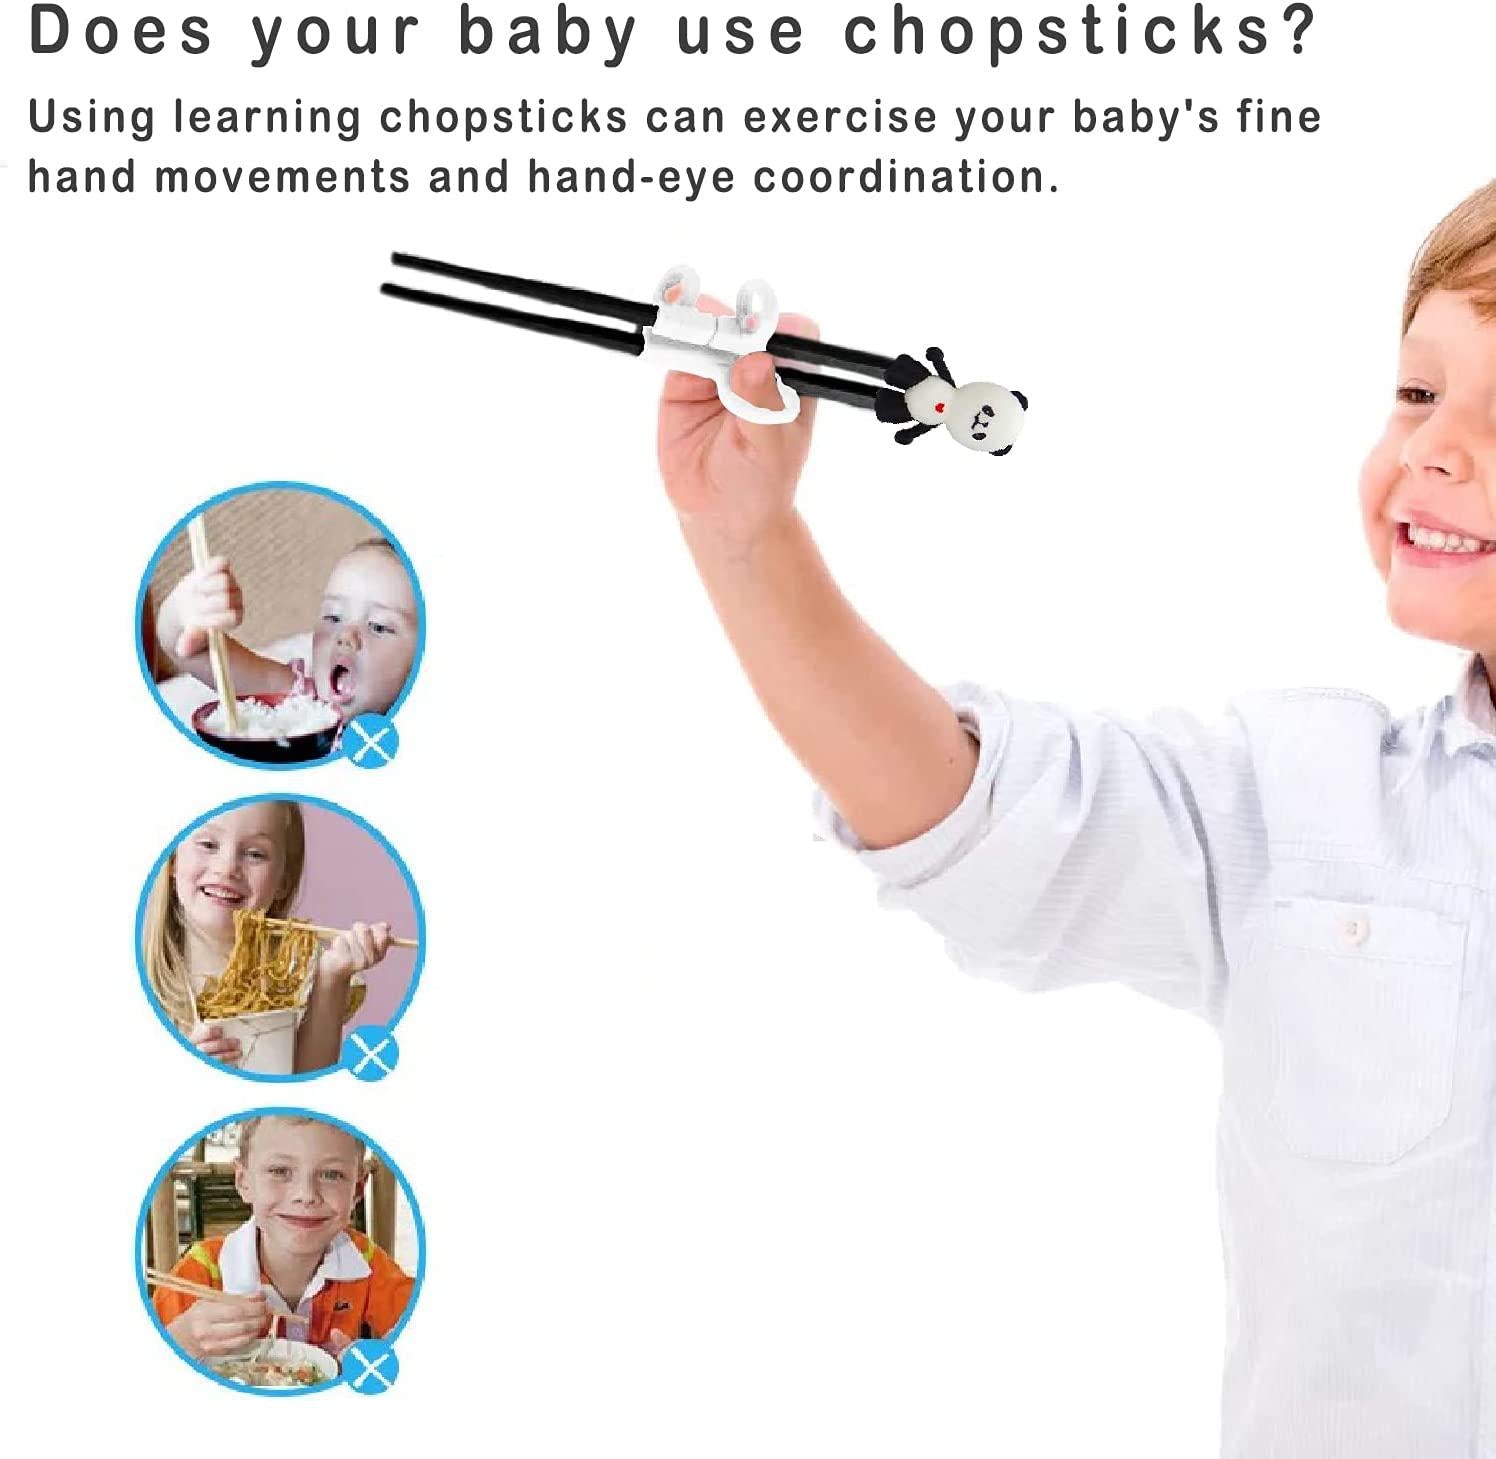 Meegoo, Kids Chopsticks - Baby Training Chopsticks, Reusable Practice Chopsticks, Finger Sets of Learning Chopsticks for Kids and Children's Beginners 4 Pcs